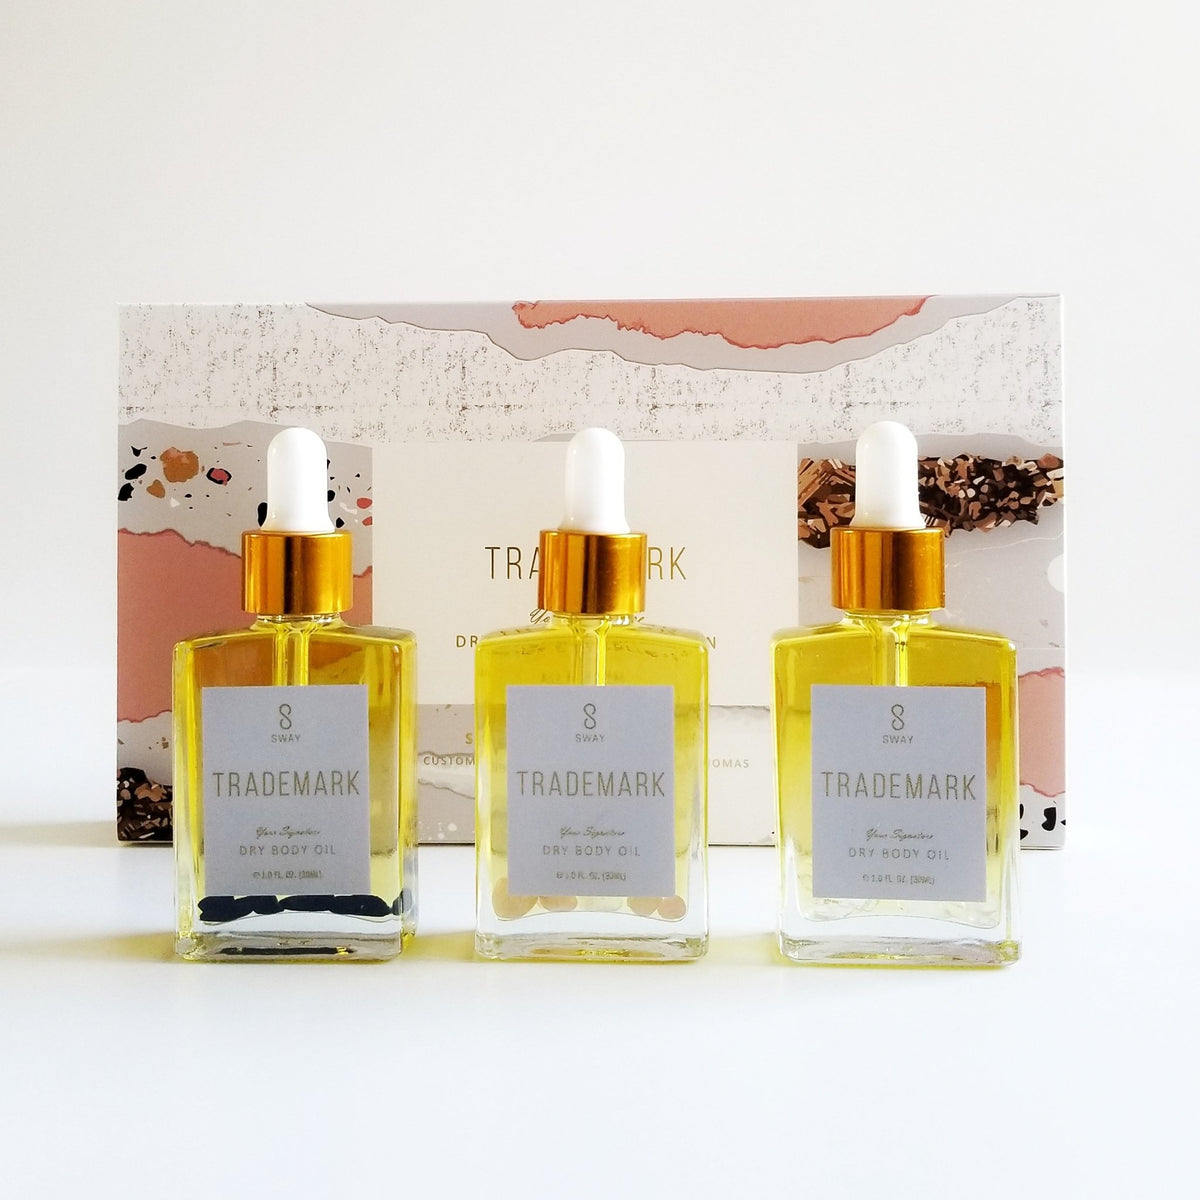 LV Perfume Set of 4 Travel Size Bottle 30ml each Bottle Oil Based